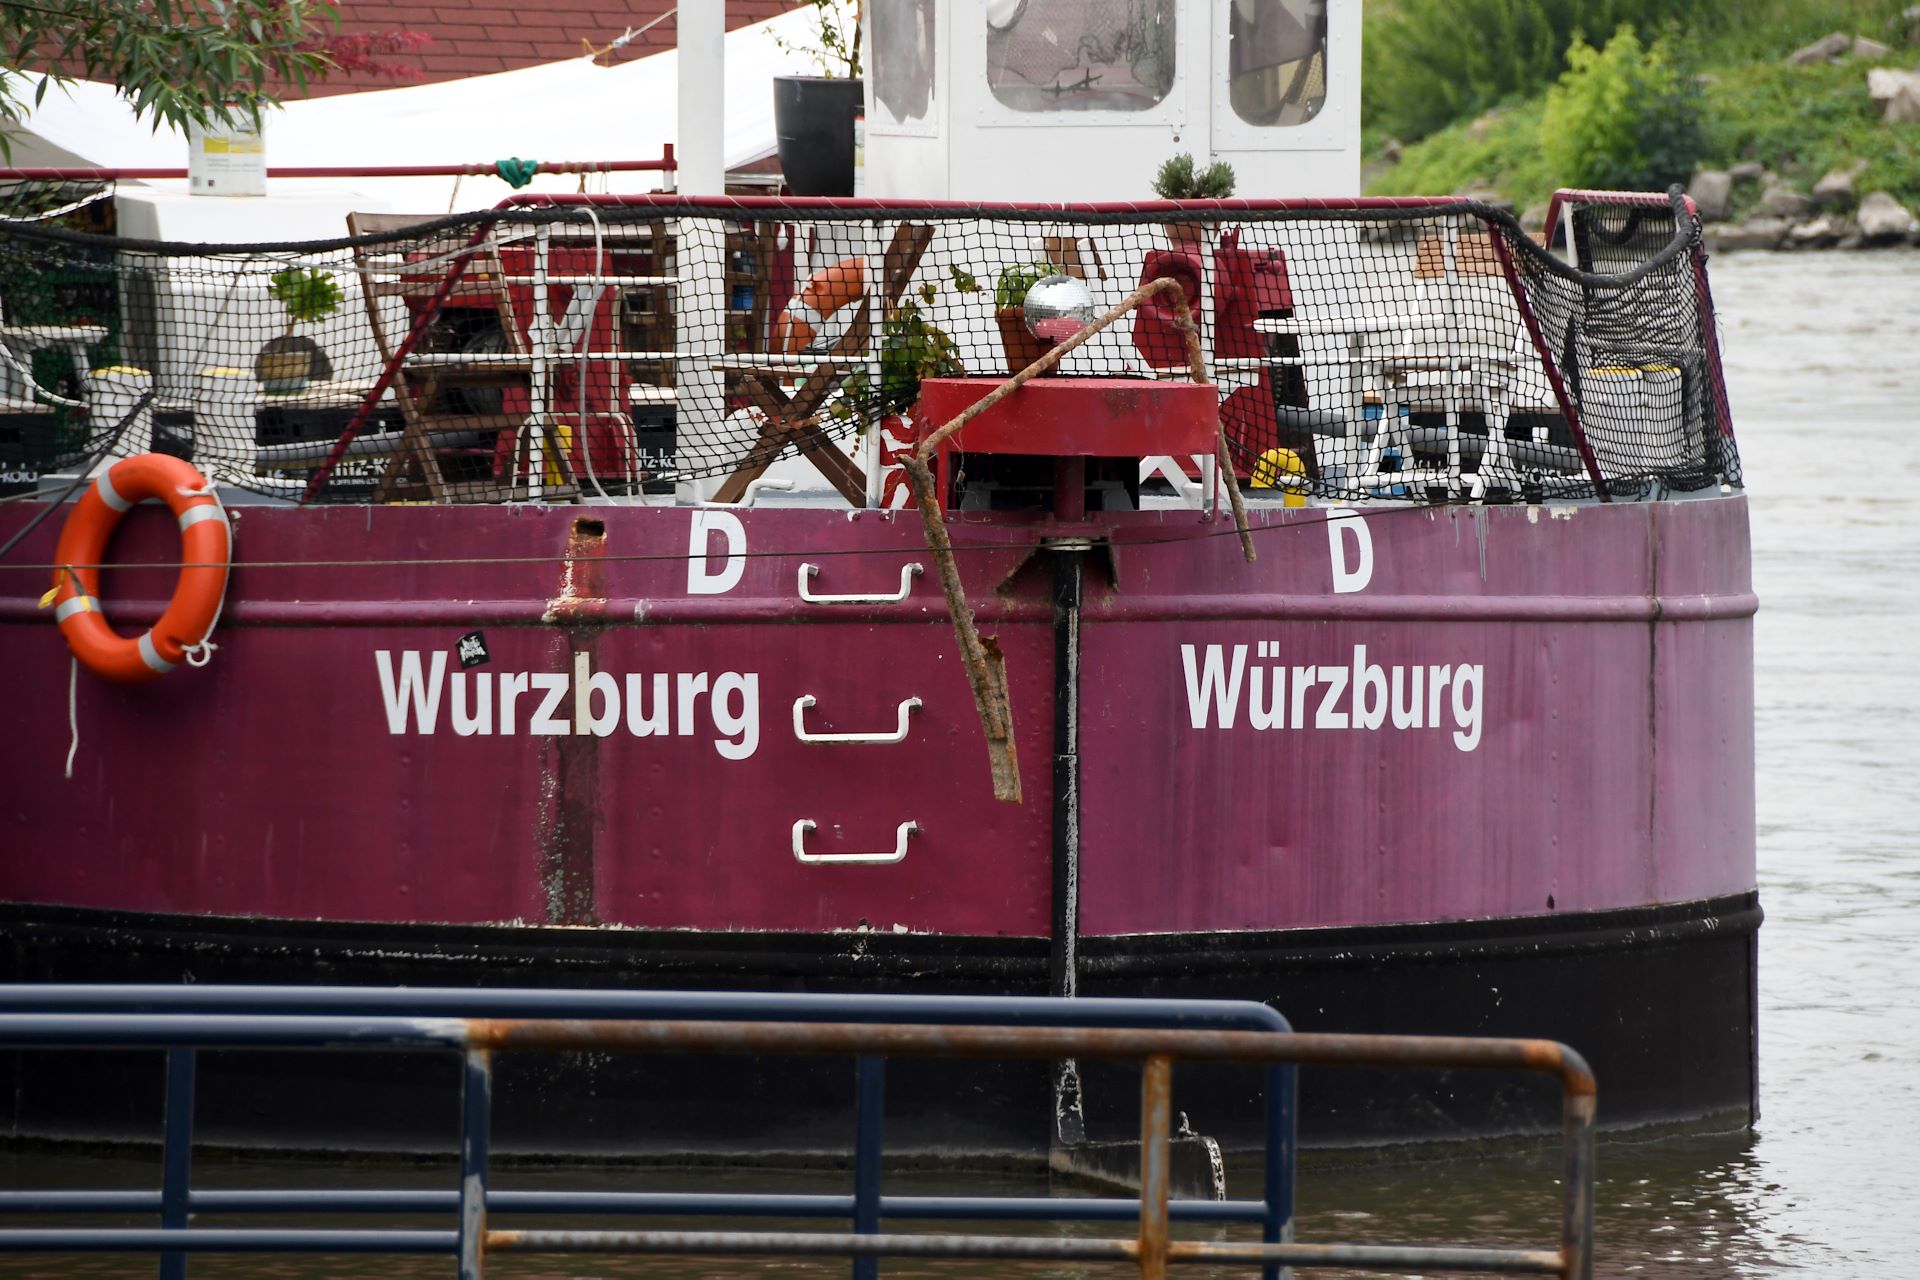 ww:2018-wuerzburg:2018-06-15-wuerzburg-657b.jpg